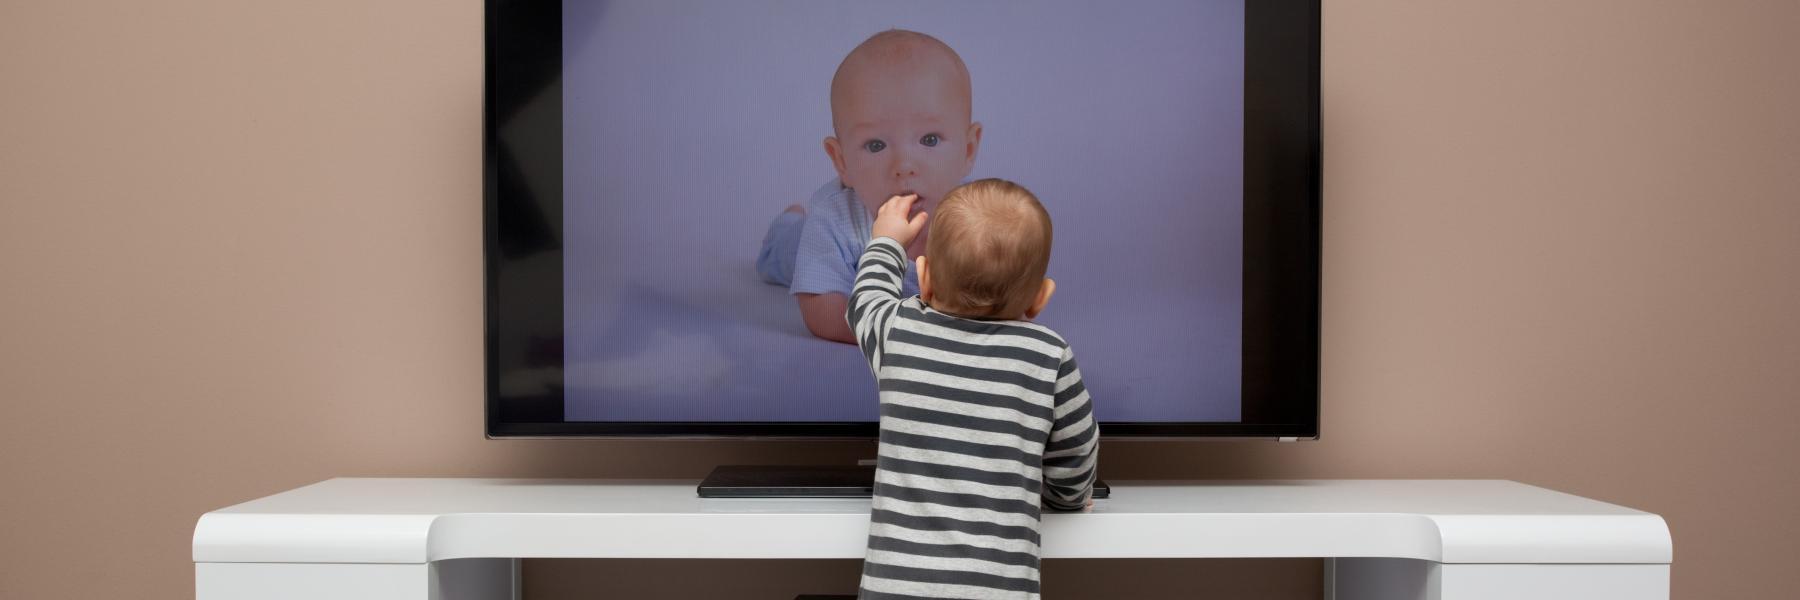 طرق فعالة لتقليل وقت مشاهدة التلفاز والأجهزة المحمولة لطفلك خلال الإغلاق